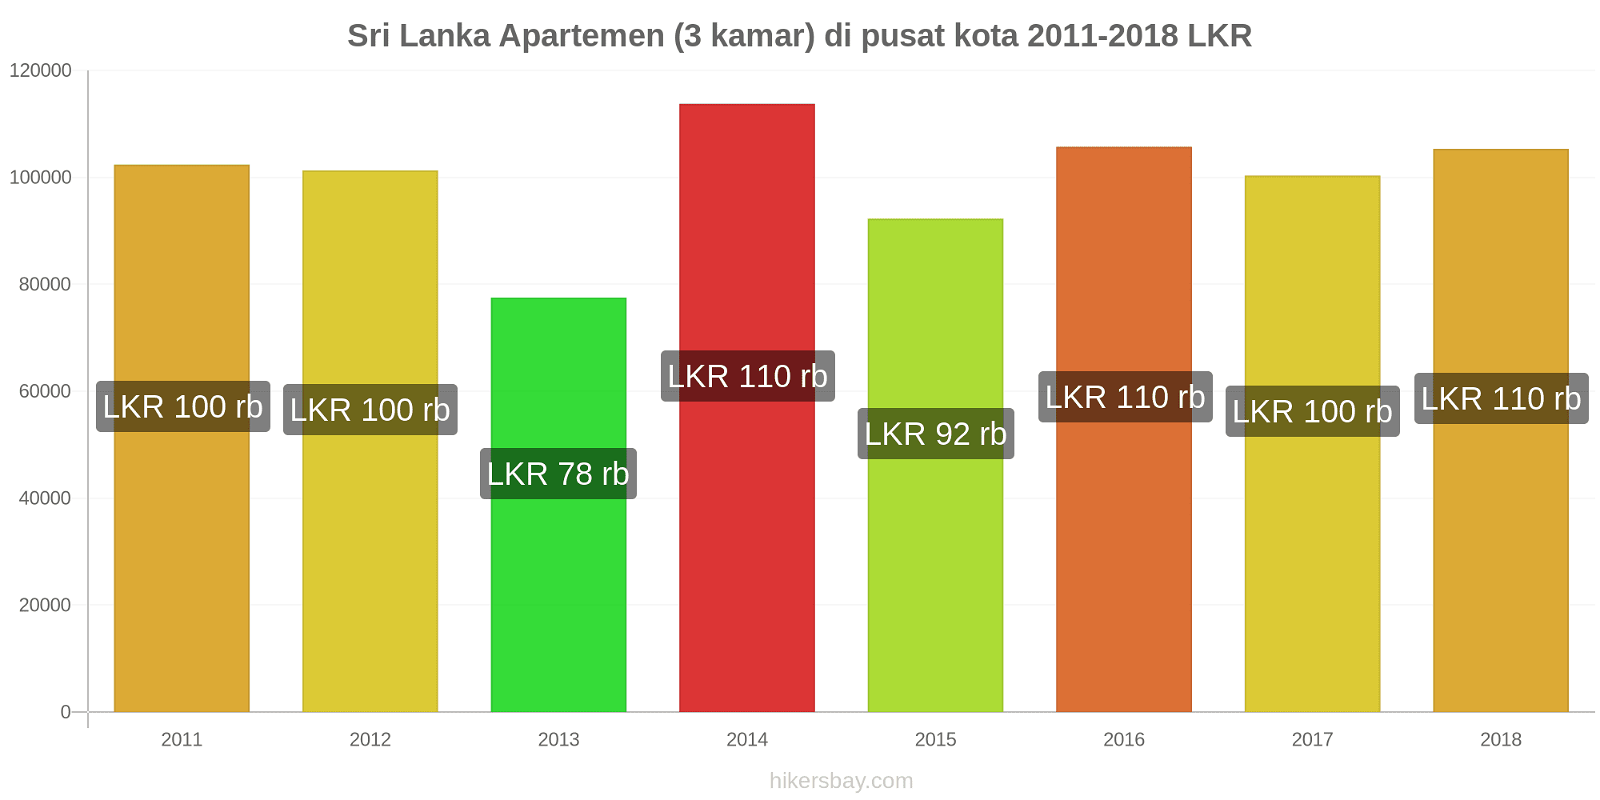 Sri Lanka perubahan harga Apartemen (3 kamar) di pusat kota hikersbay.com